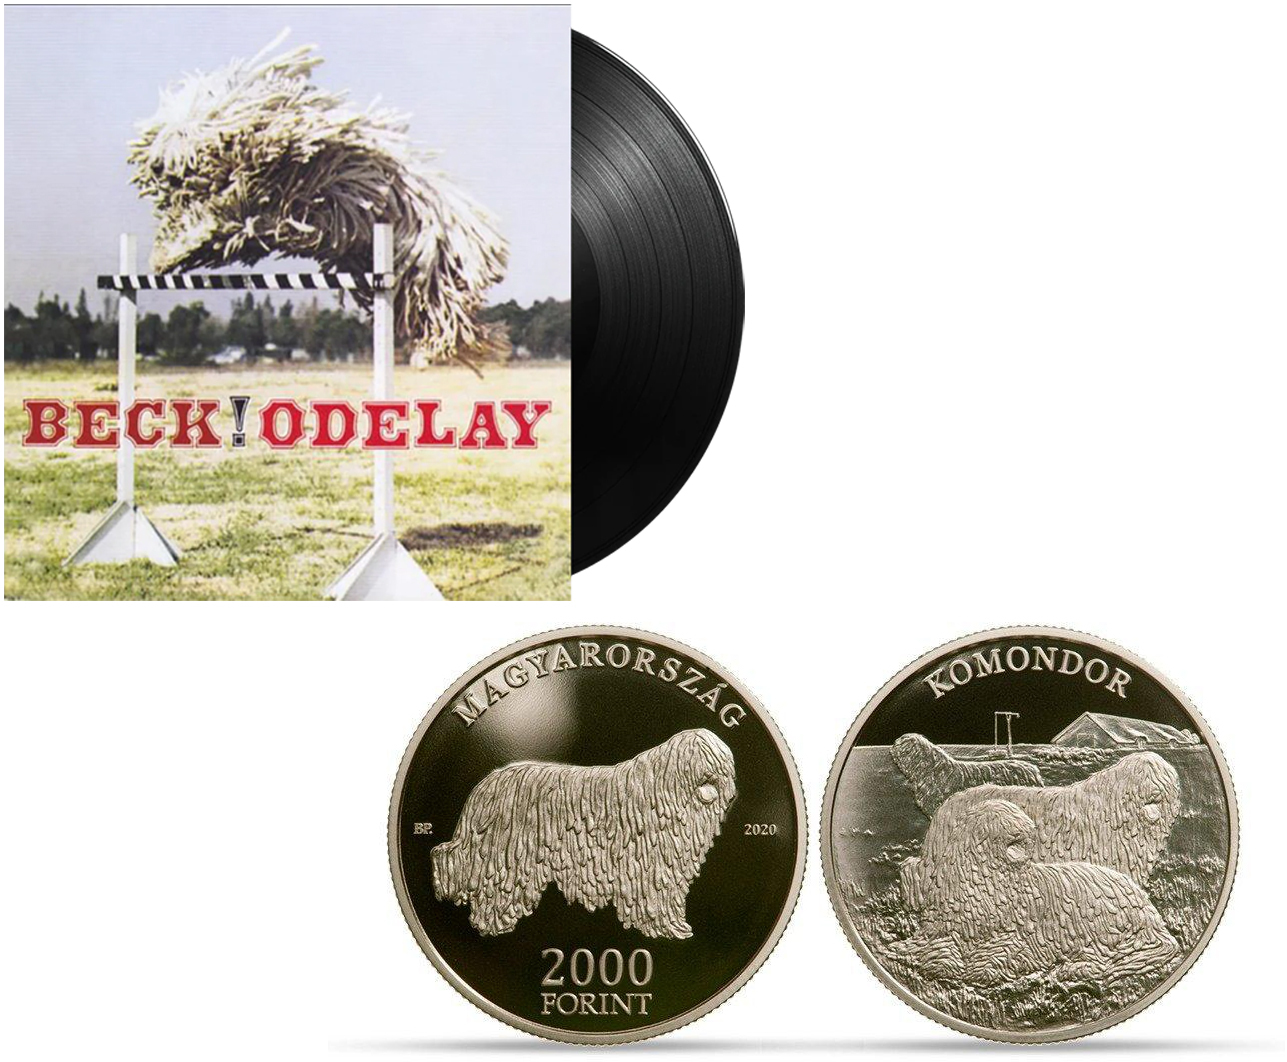 Medalia comemorativă Komondor de 2000 Ft și coperta albumului Beck!Odelay Komondor